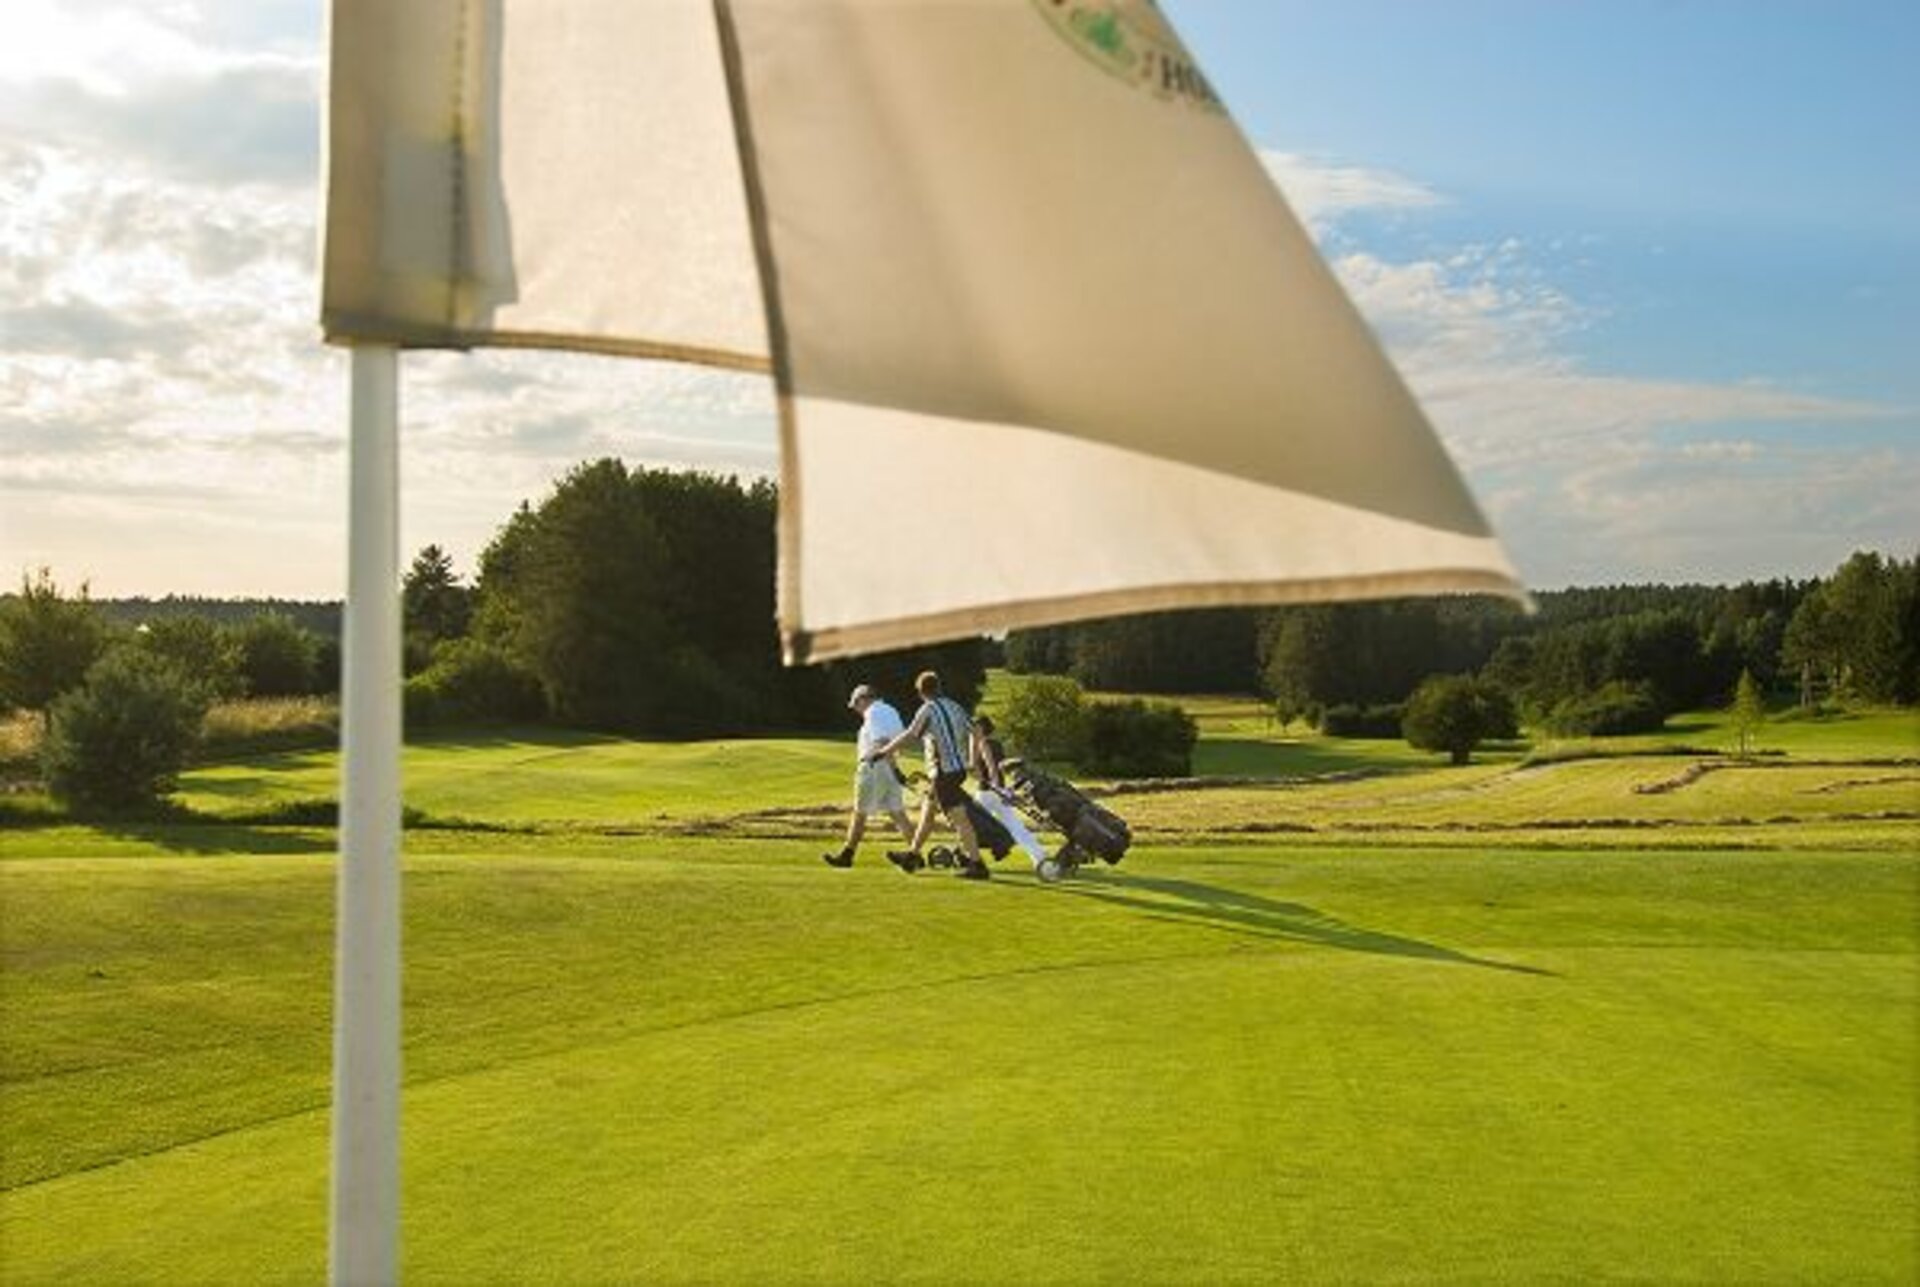 Vor dem saftigen Grün eines Golfplatzes steht ein weißes Fähnchen. Im Hintergrund laufen zwei Golfspieler mit dem Wagen über den Platz.